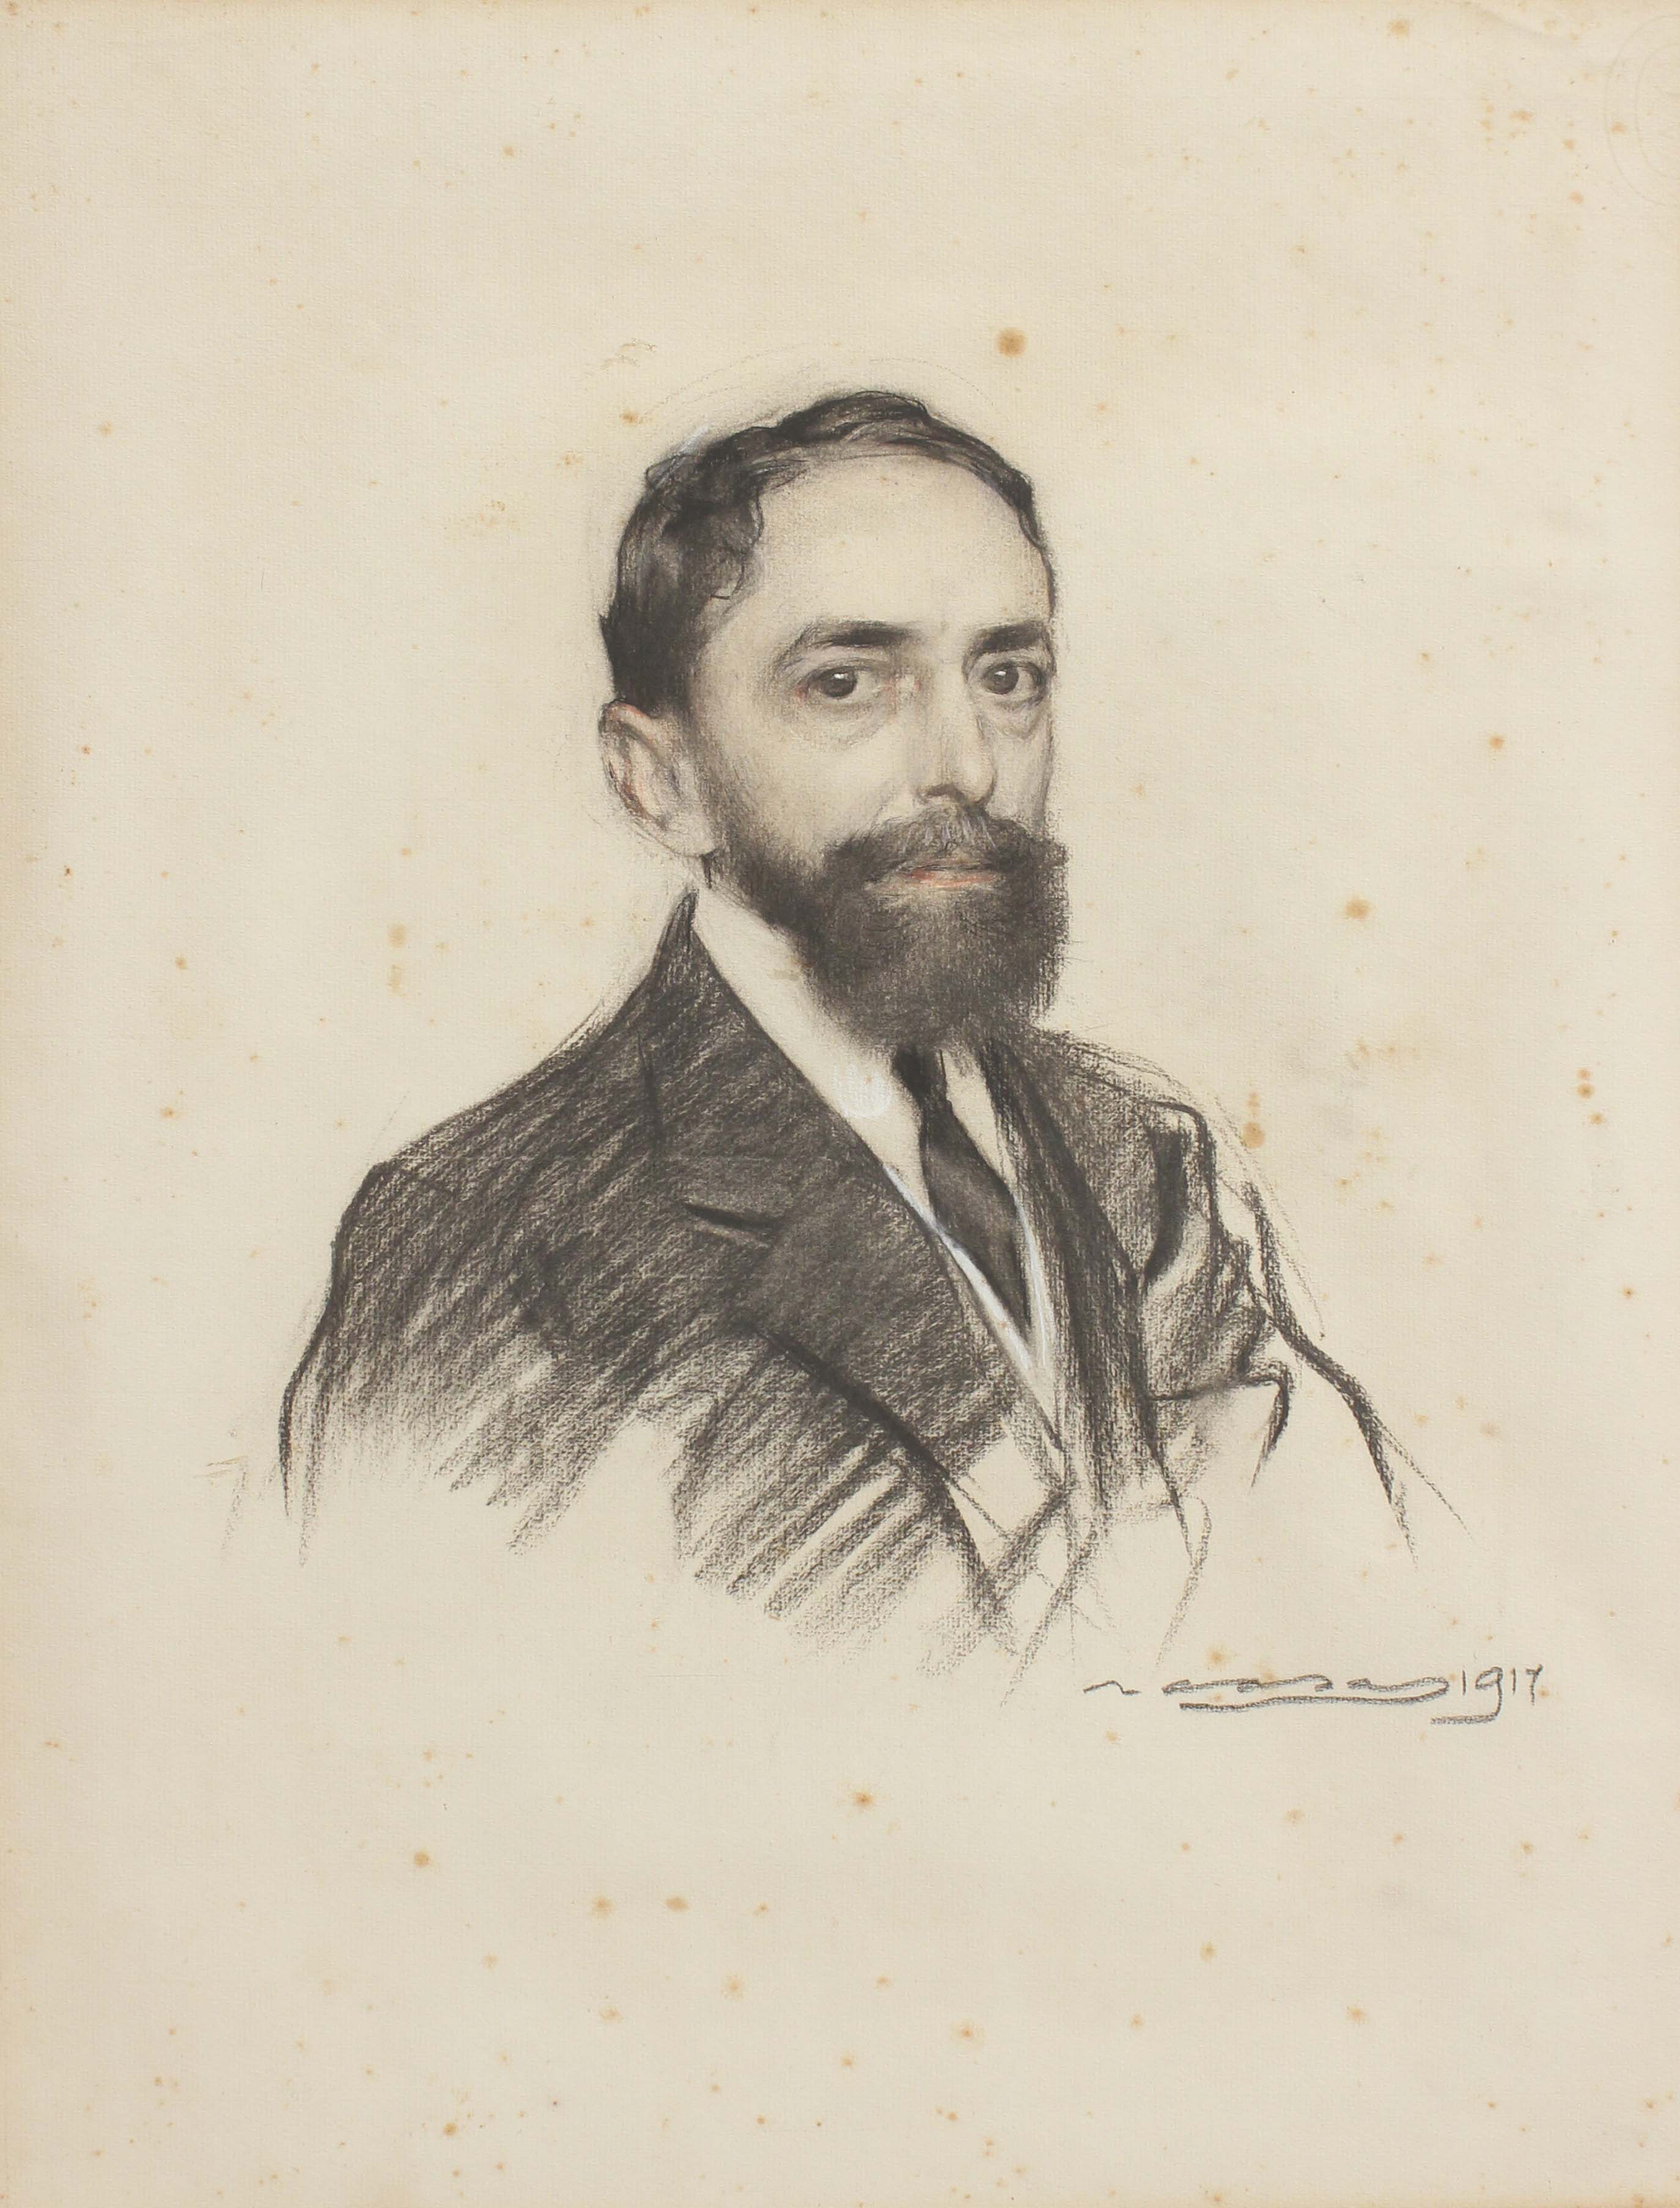 RAMÓN CASAS Y CARBO (1866-1932). "RETRATO SEÑOR", 1917.